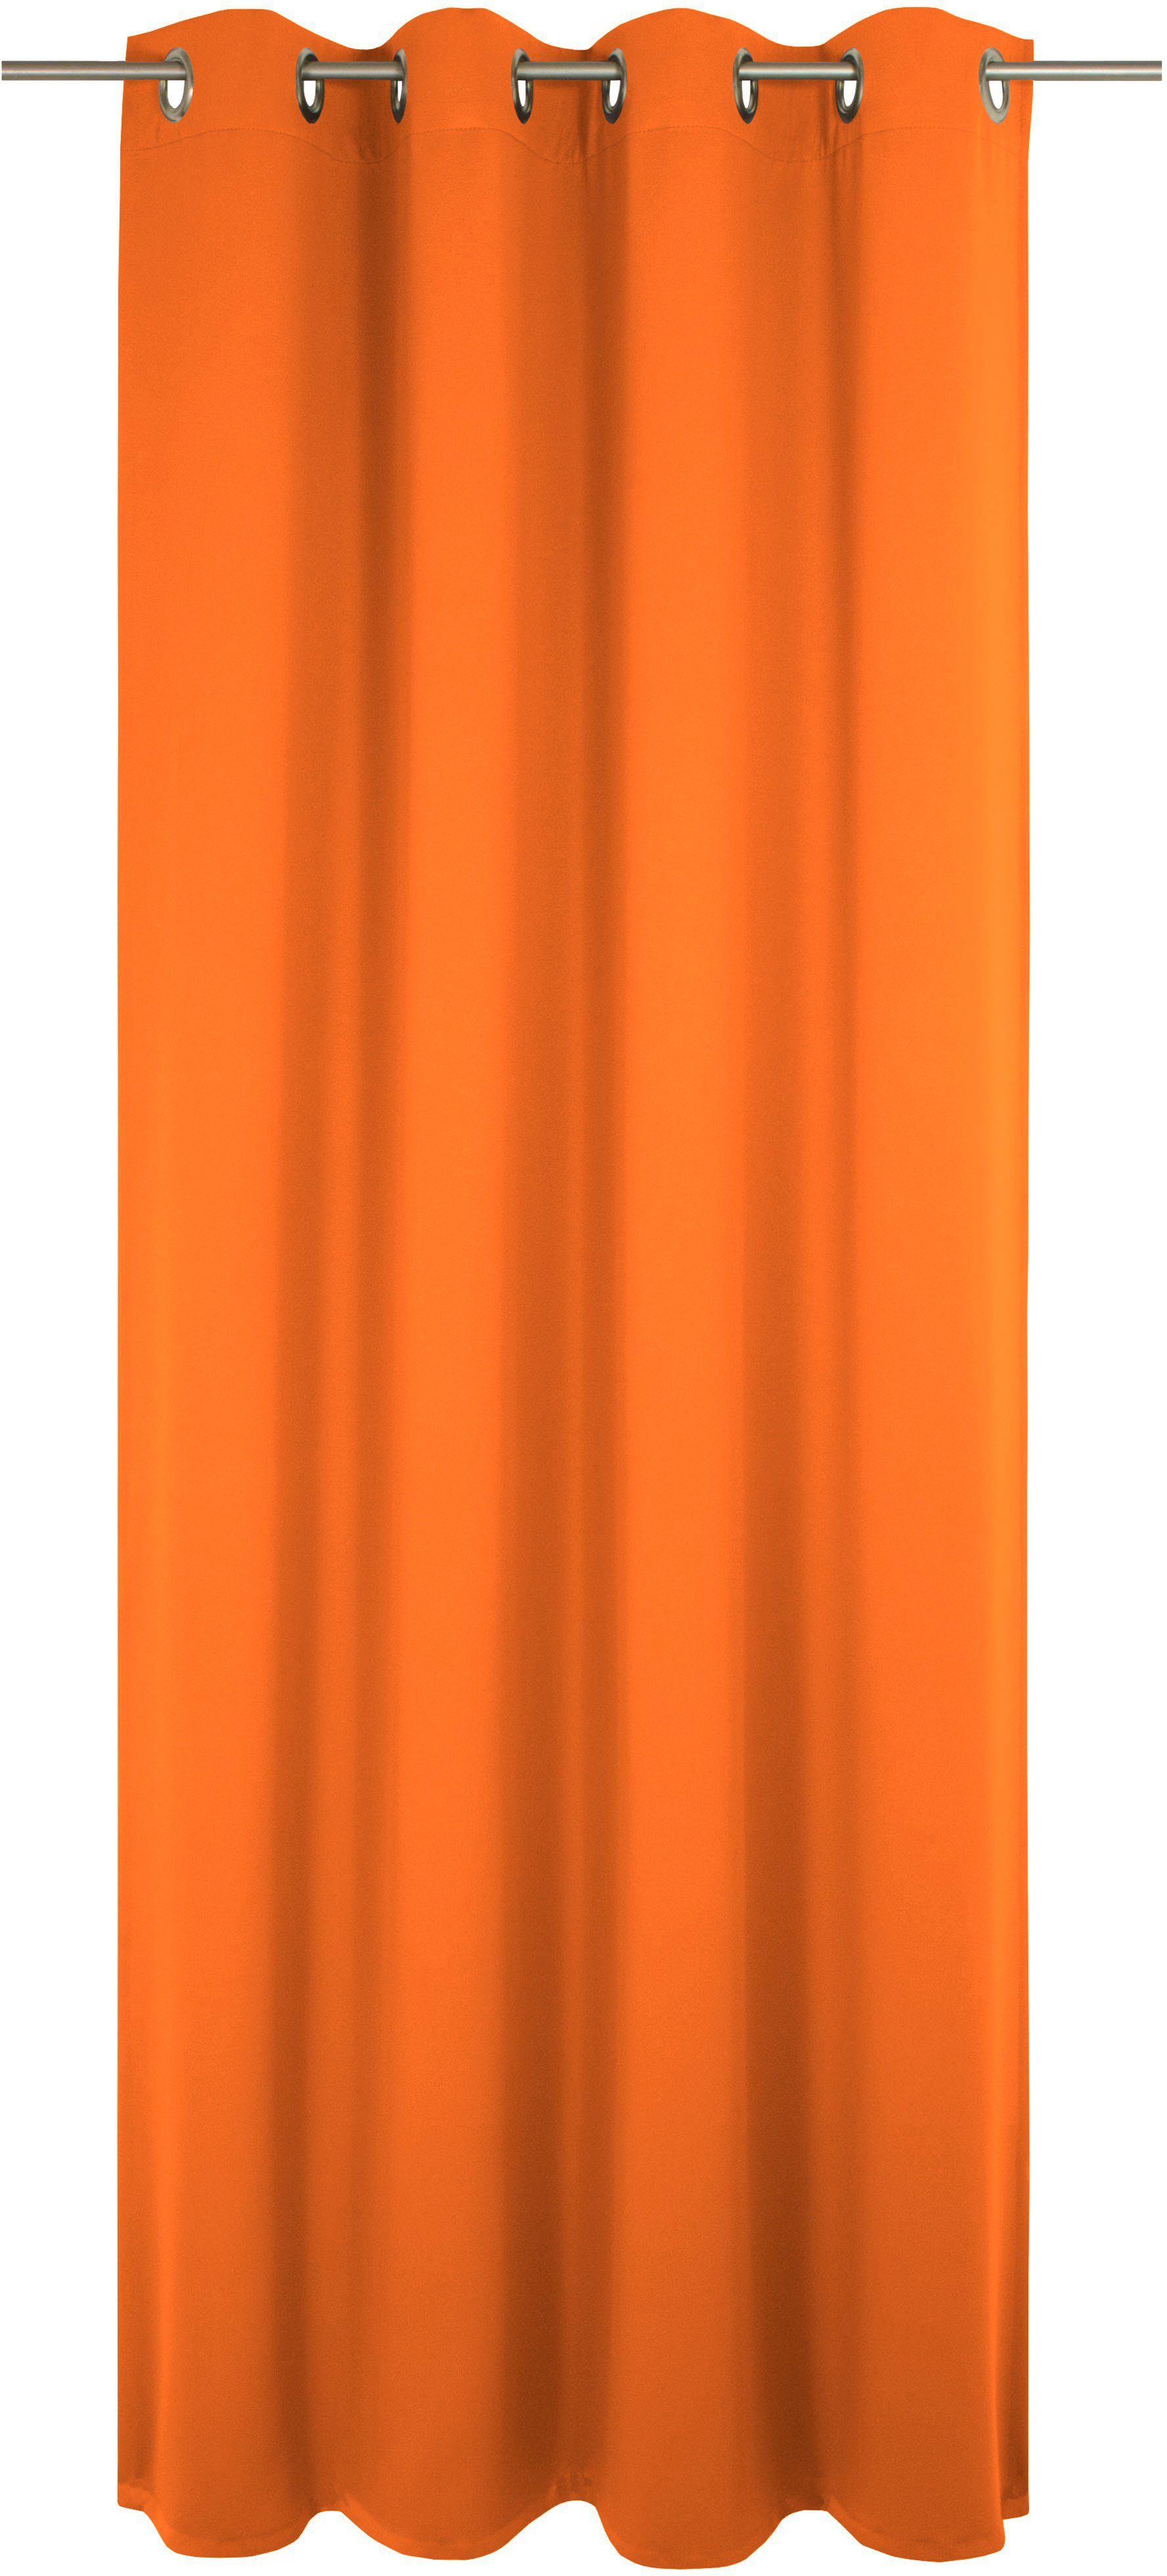 Orange Ösengardinen kaufen » Orangene Vorhänge mit Ösen | OTTO